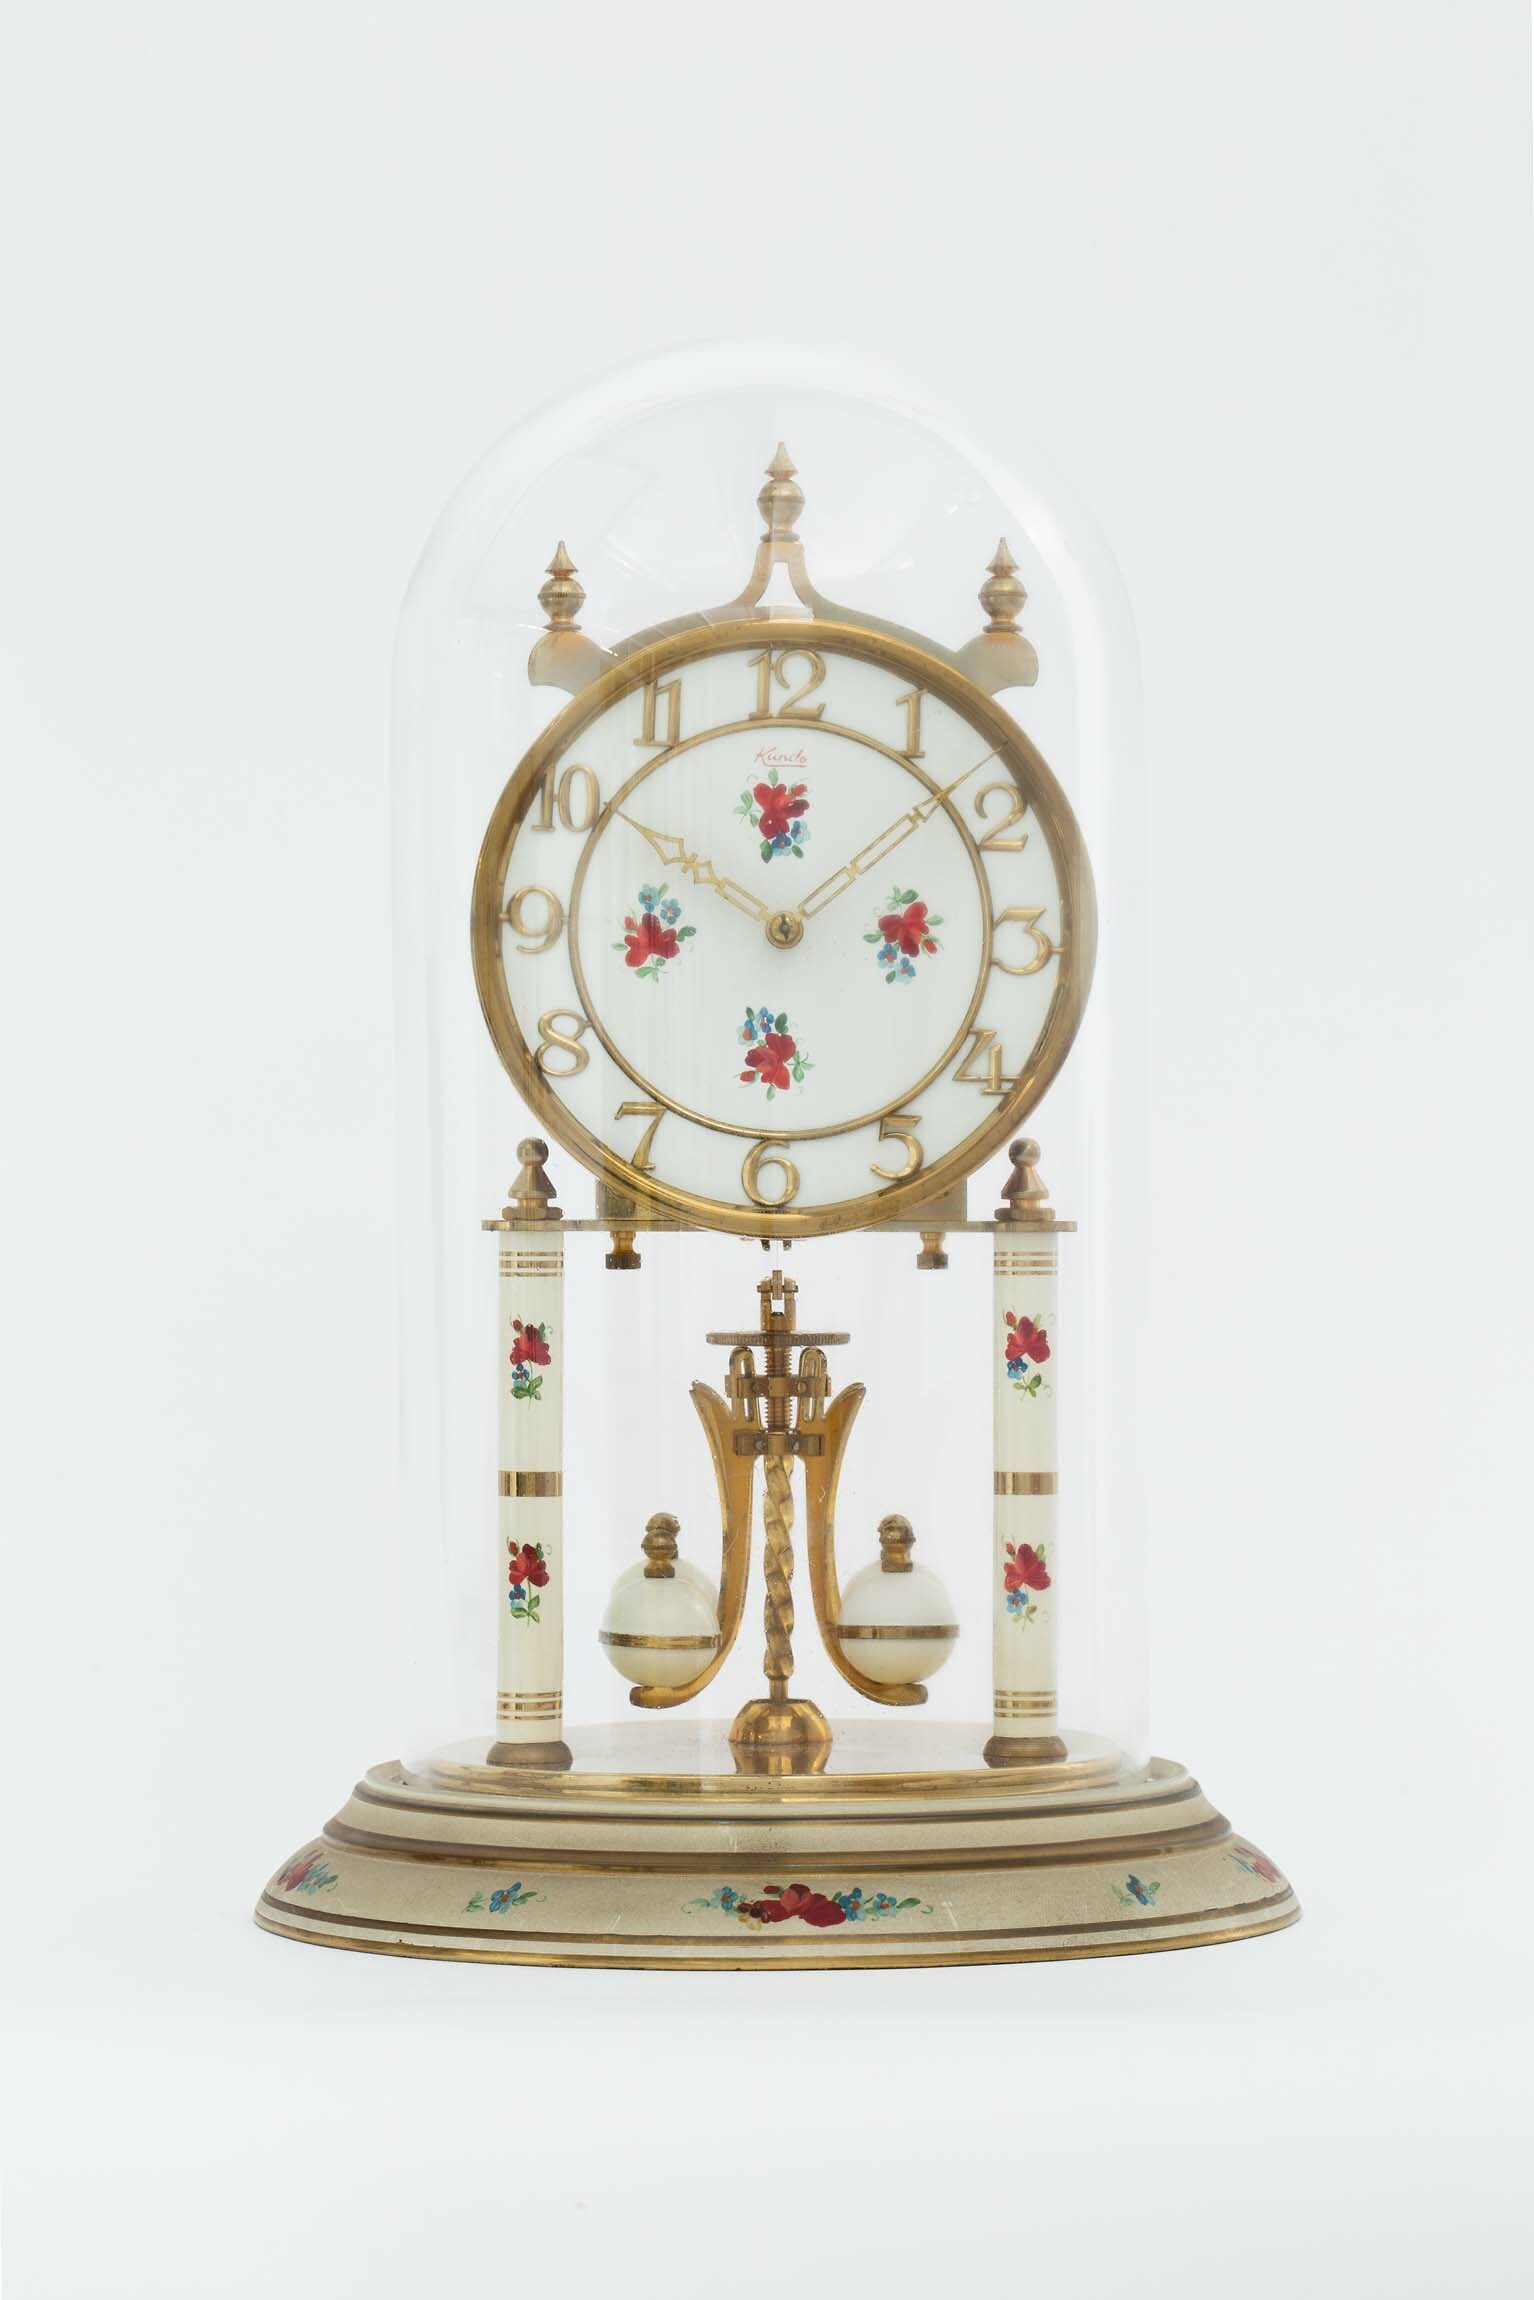 Drehpendeluhr, Kundo, St. Georgen, um 1960 (Deutsches Uhrenmuseum CC BY-SA)